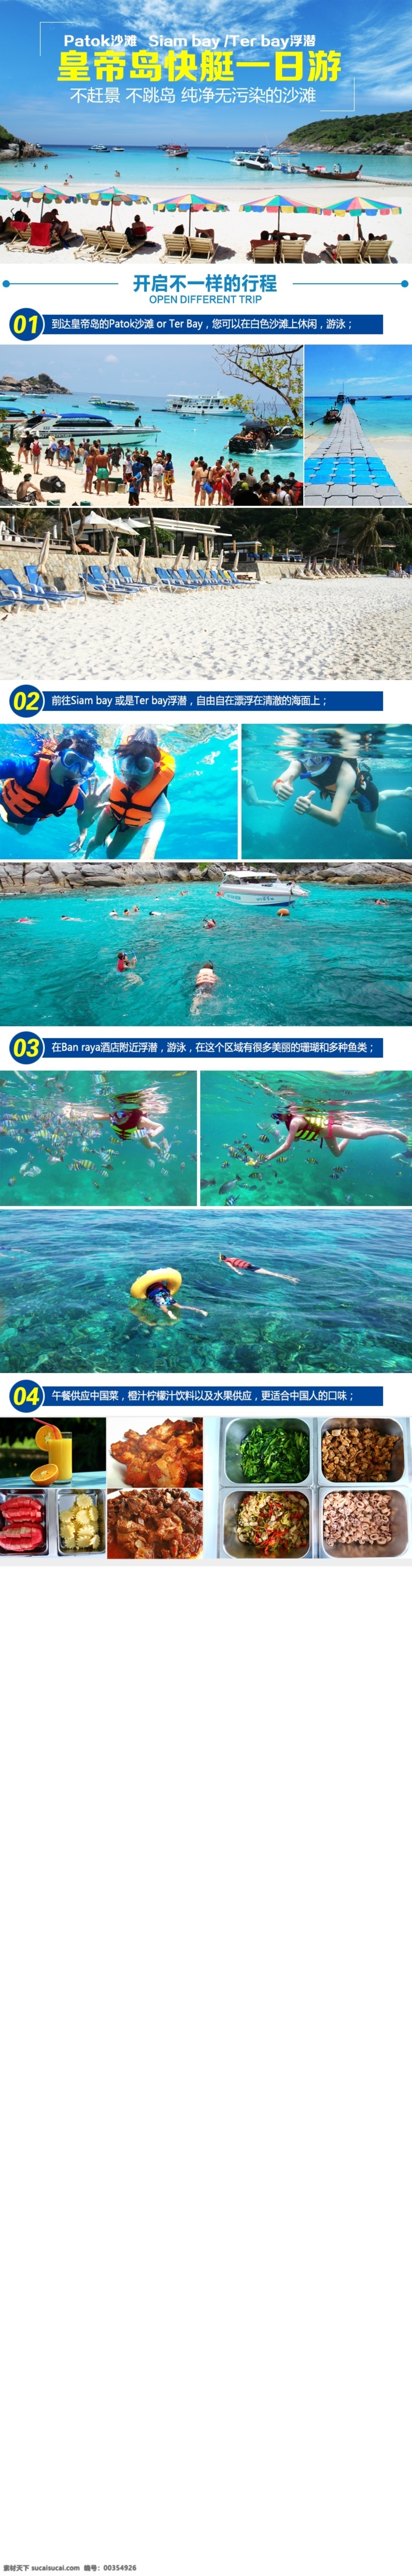 泰国 皇帝 岛 详情 修改 泰国旅游 国外旅游 旅游海报 青色 天蓝色